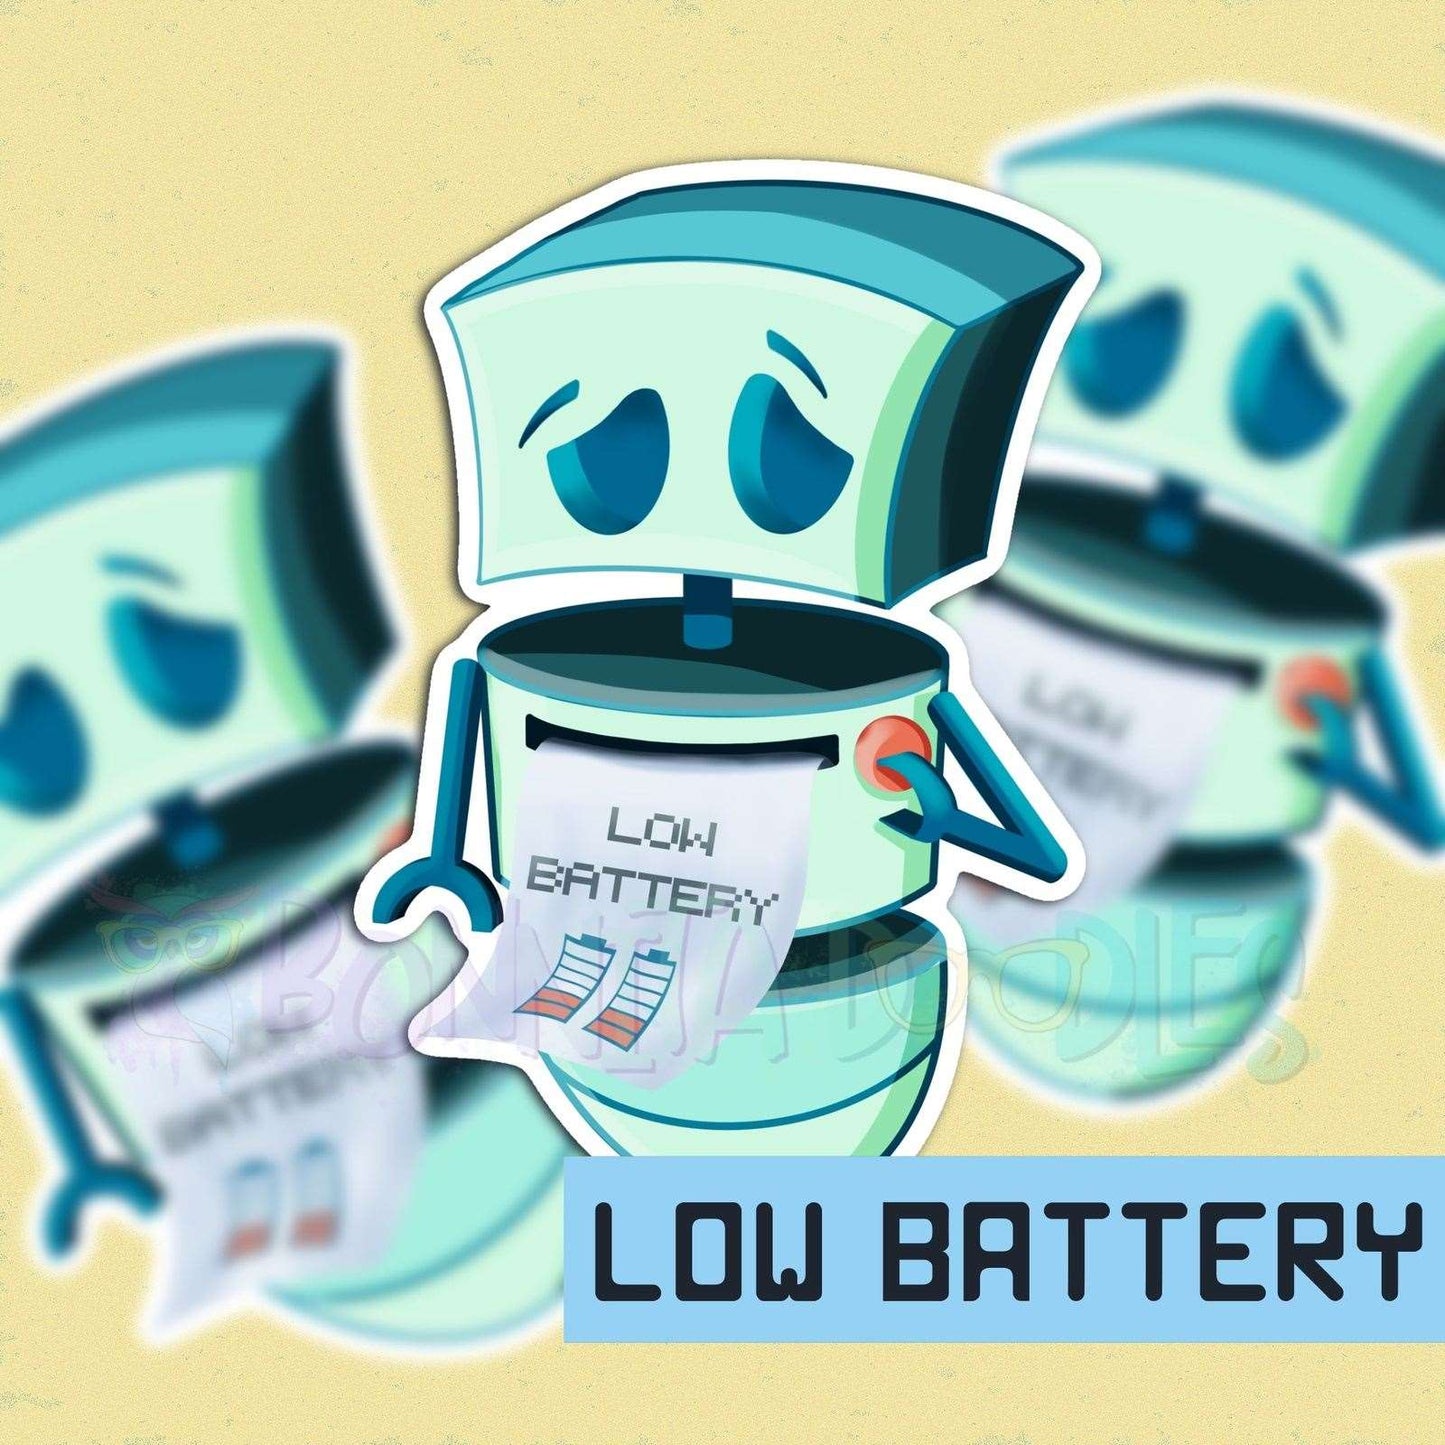 Low Battery kawaii Robot PRE ORDER vinyl sticker